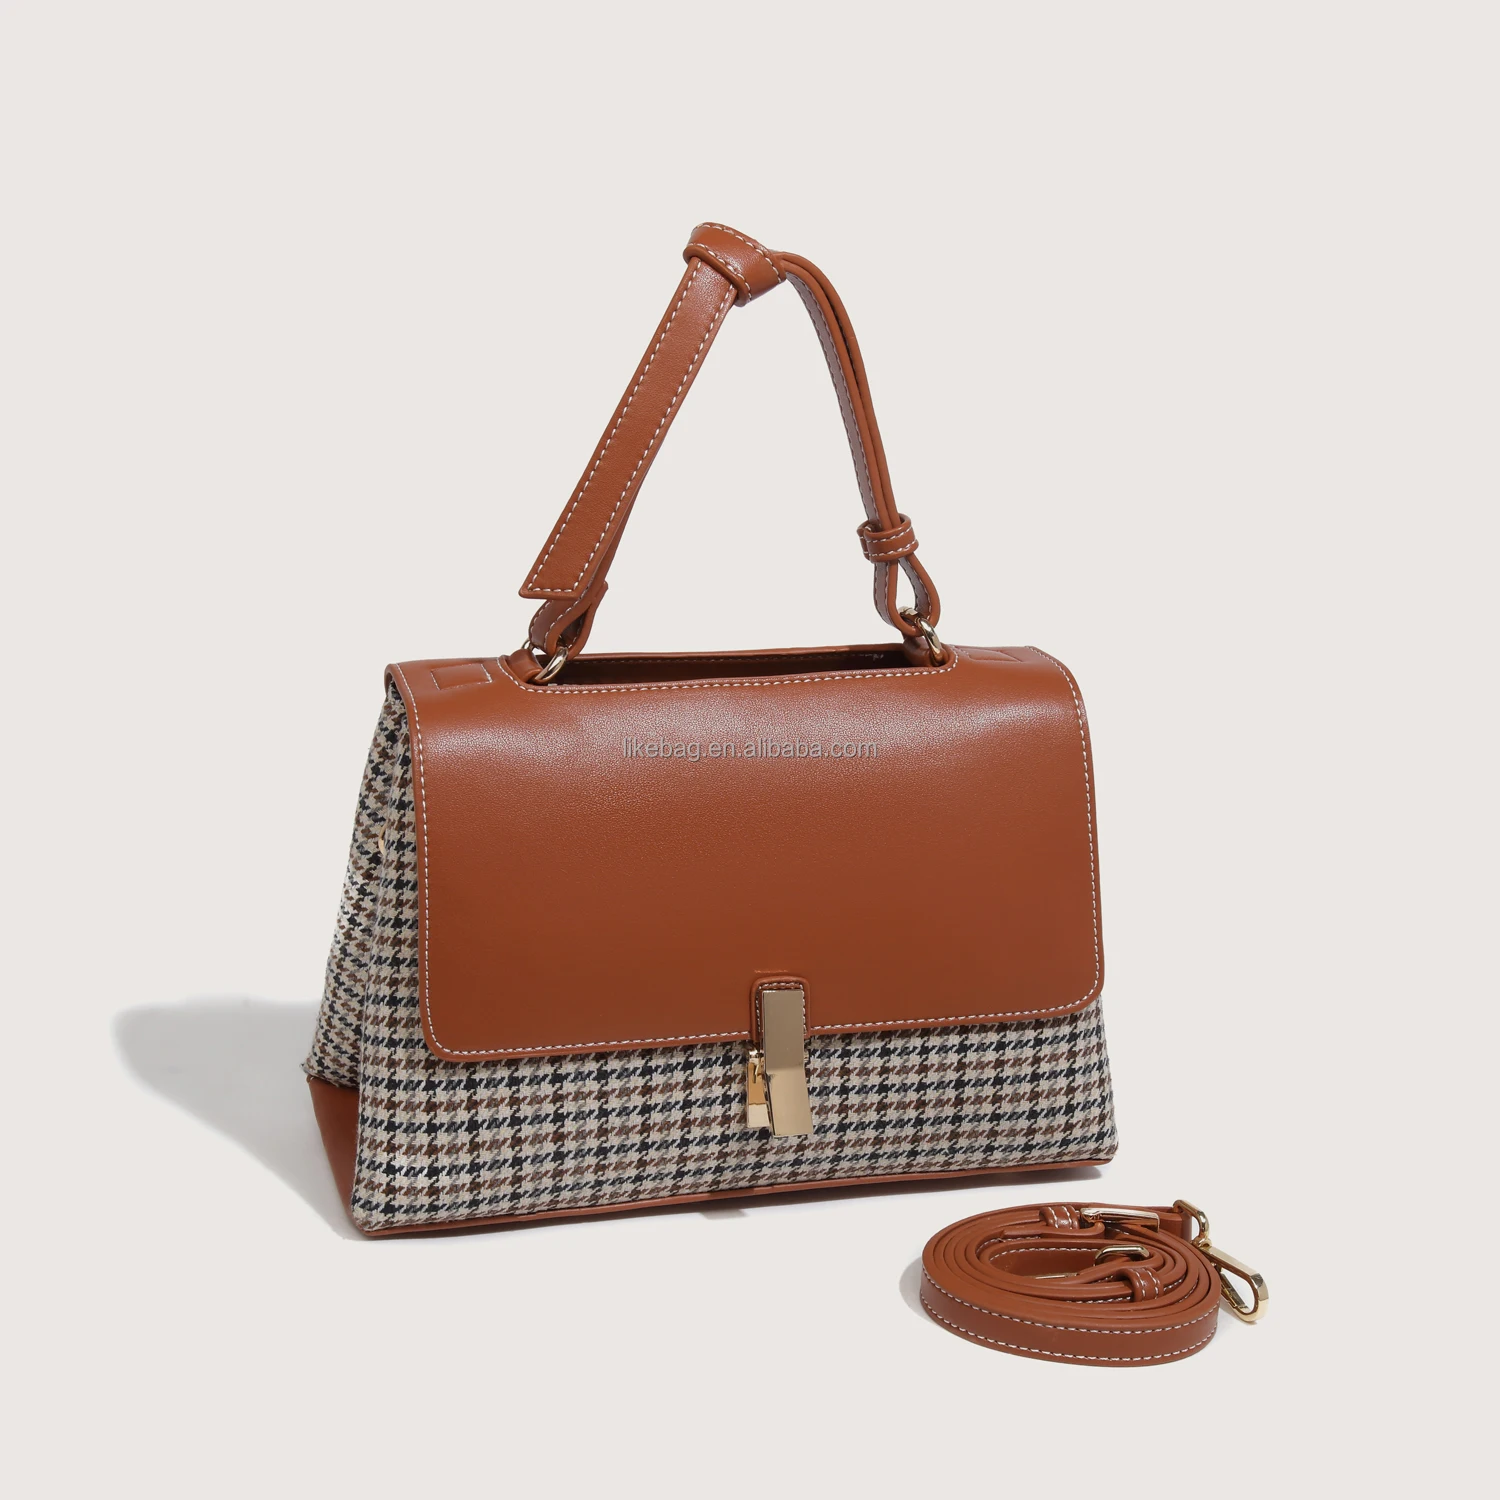 

LIKEBAG Fashion Retro Check Bag High-quality Luxury PU Leather Ladies Handbag shoulder Messenger tote bag